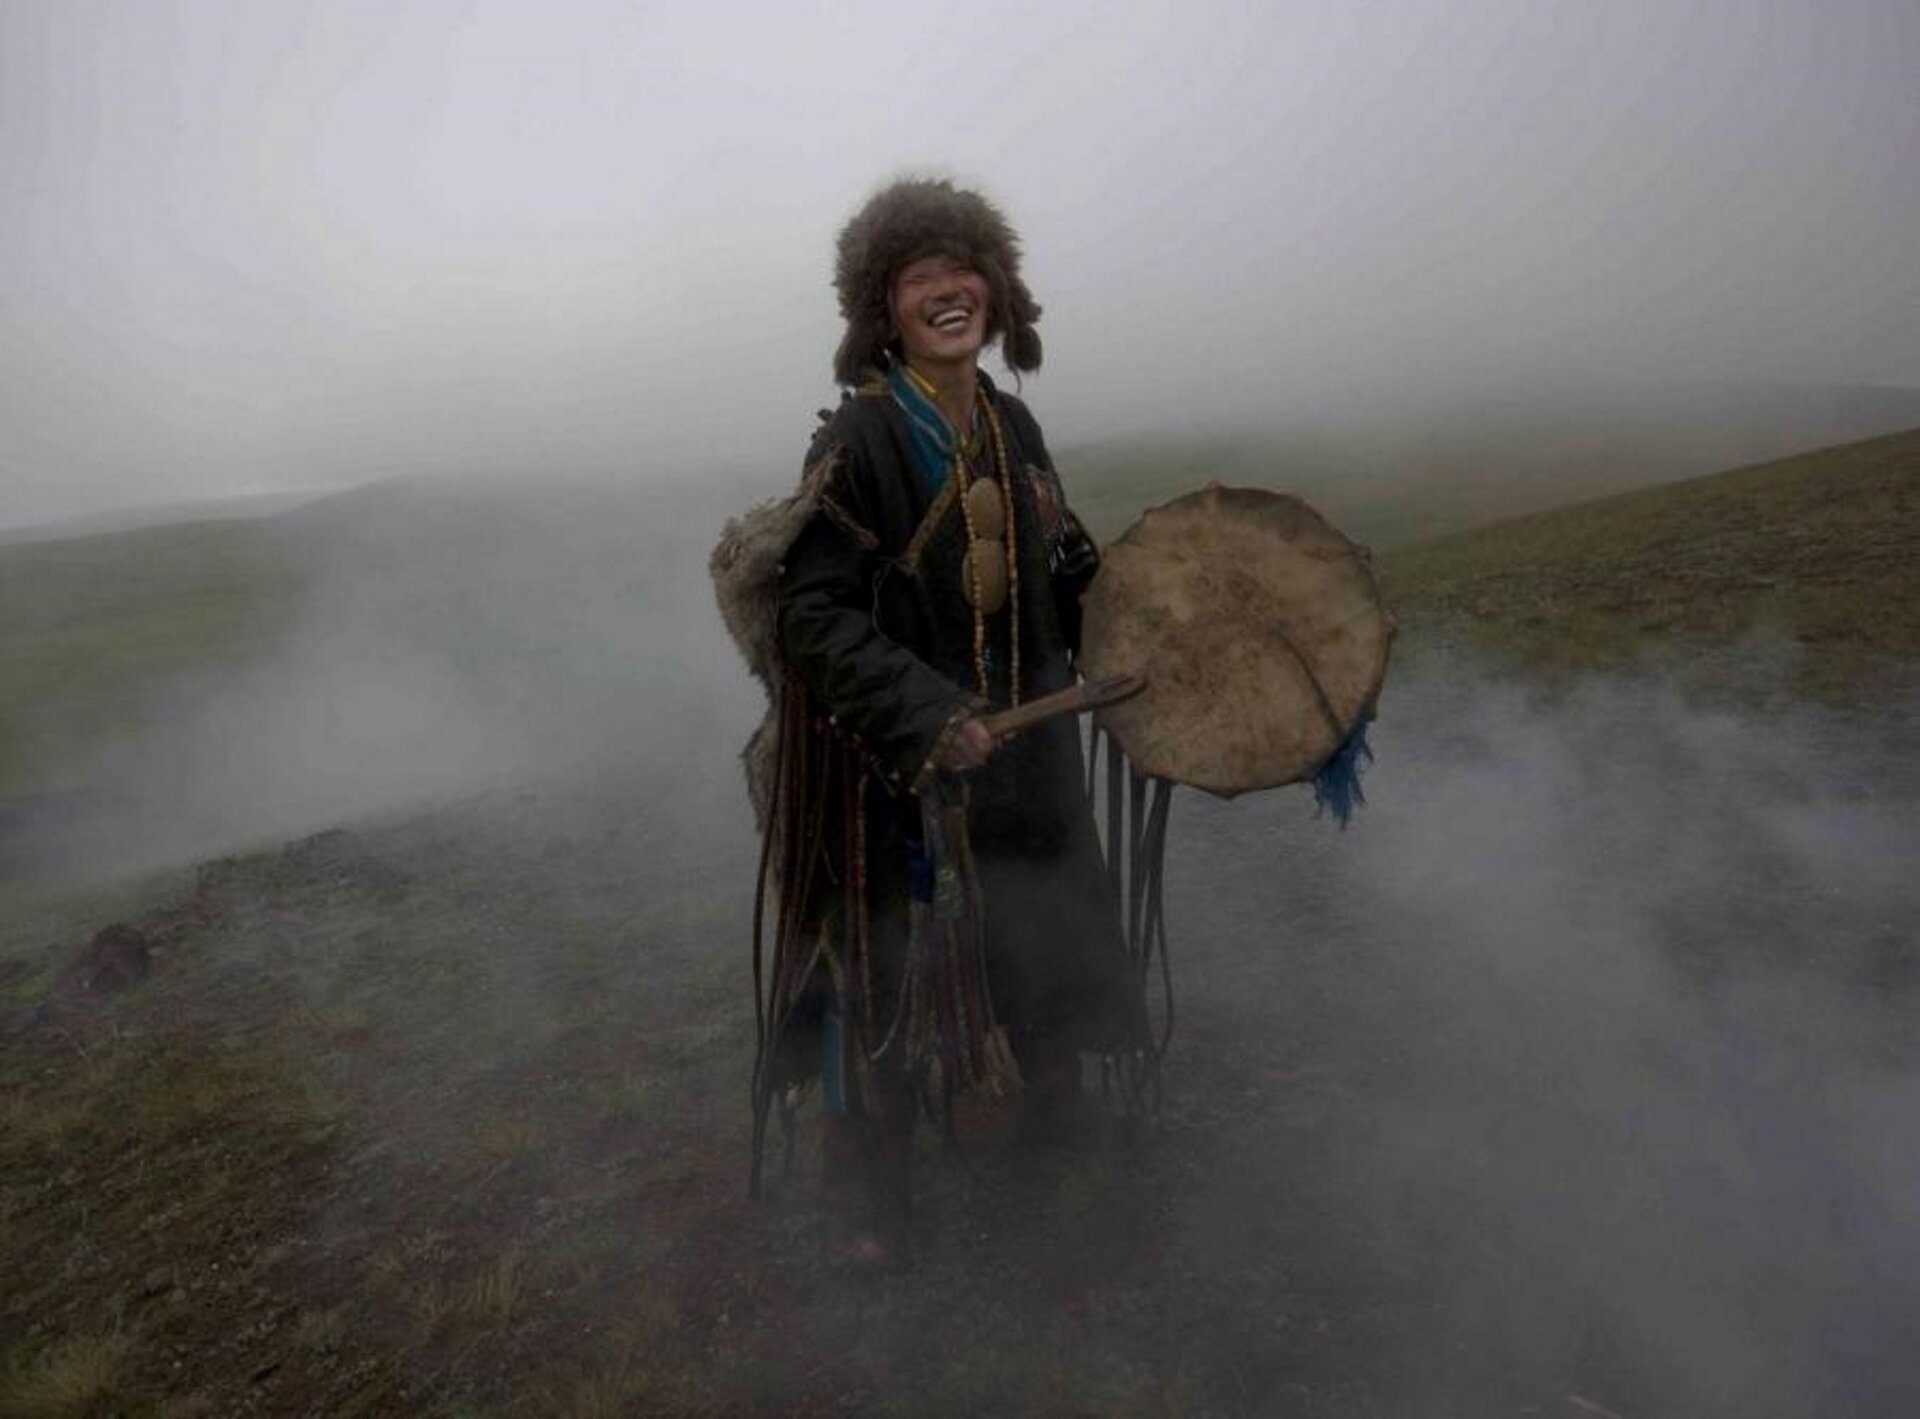 Ilustracja przedstawia szamana z Mongolii, który stoi na wzgórzu i uderza o bęben. W tle jest dużo dymu - w czasie ceremonii przebłagiwania duchów. Mężczyzna ubrany jest w strój ze skóry zwierzęcej, przy rękawach ma frędzle o długości do ziemi. W trakcie ceremonii jest bardzo uśmiechnięty, widoczne są białe zęby.